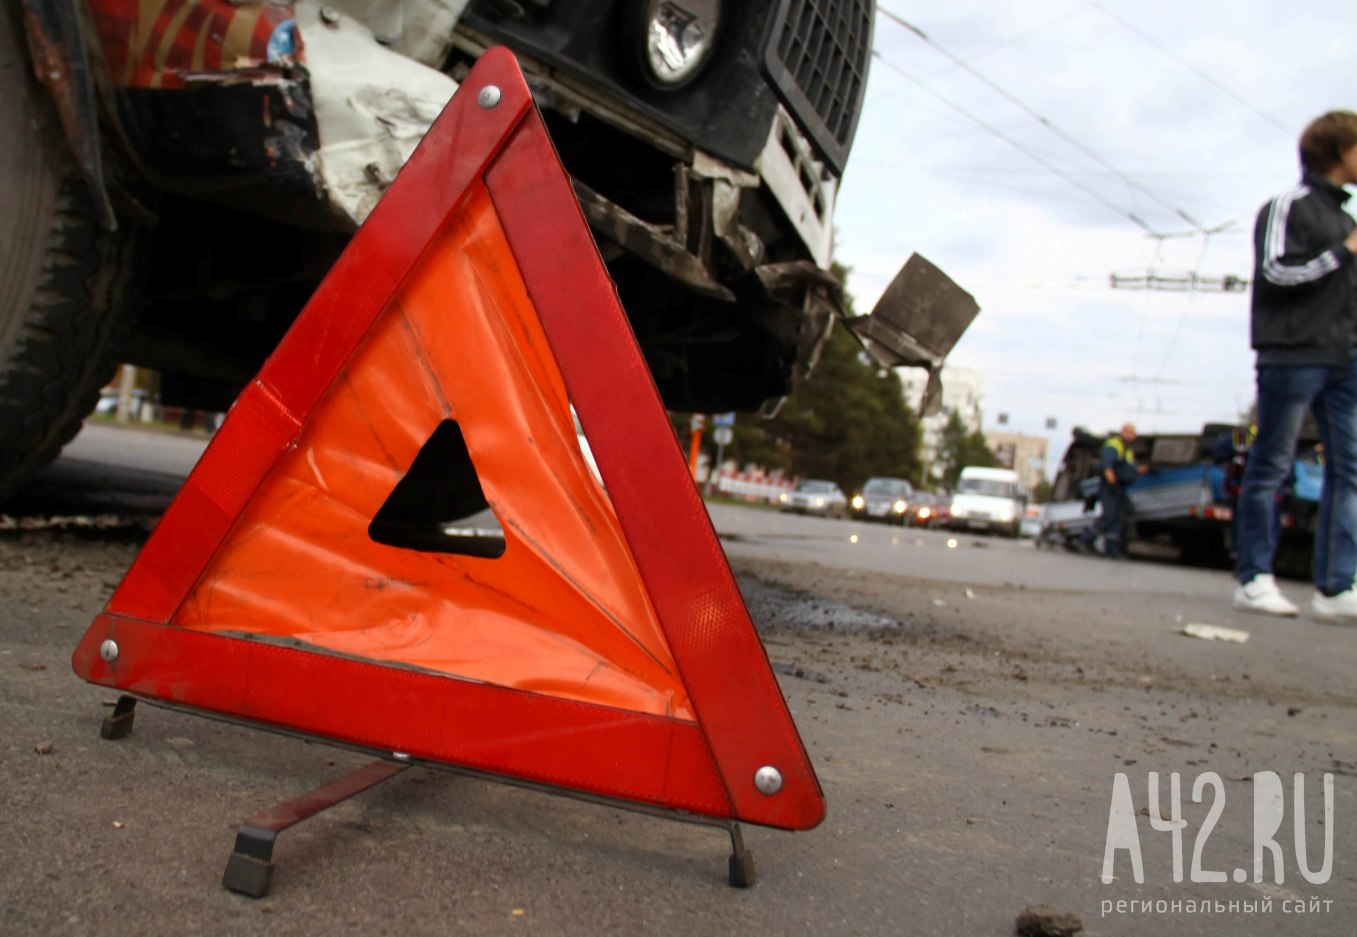 Очевидцы сообщили о жёстком ДТП на трассе в Кузбассе